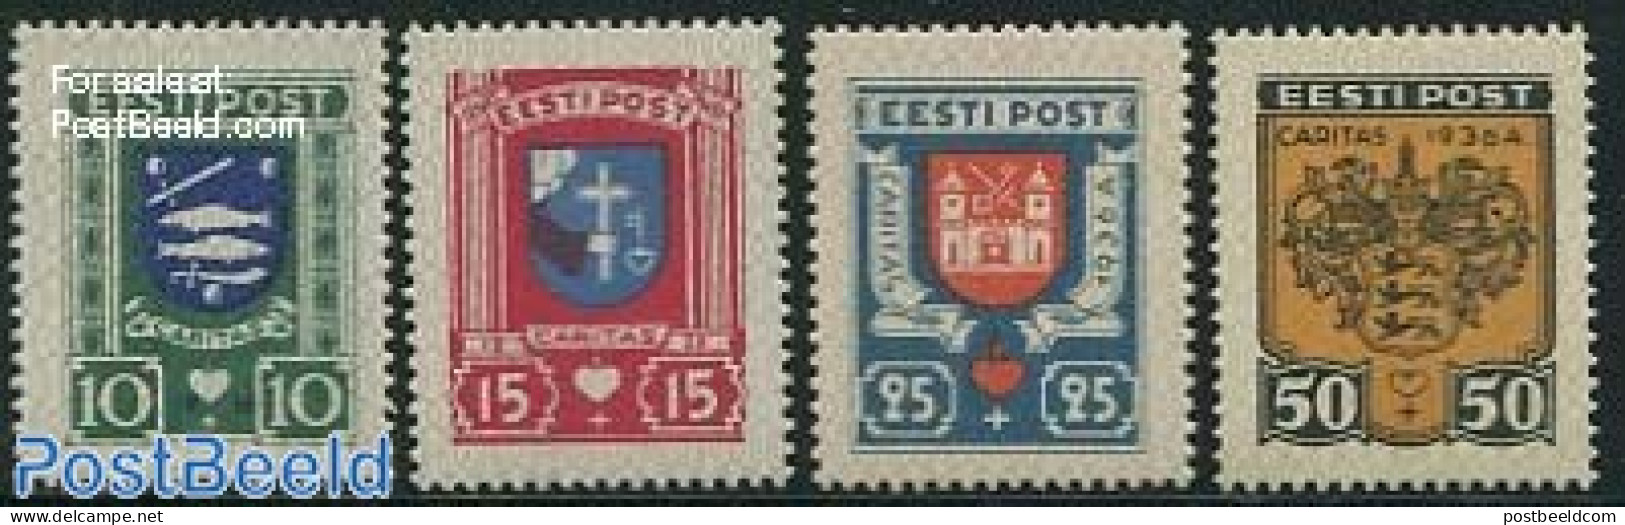 Estonia 1936 City Coat Of Arms 4v, Mint NH, History - Coat Of Arms - Estonia